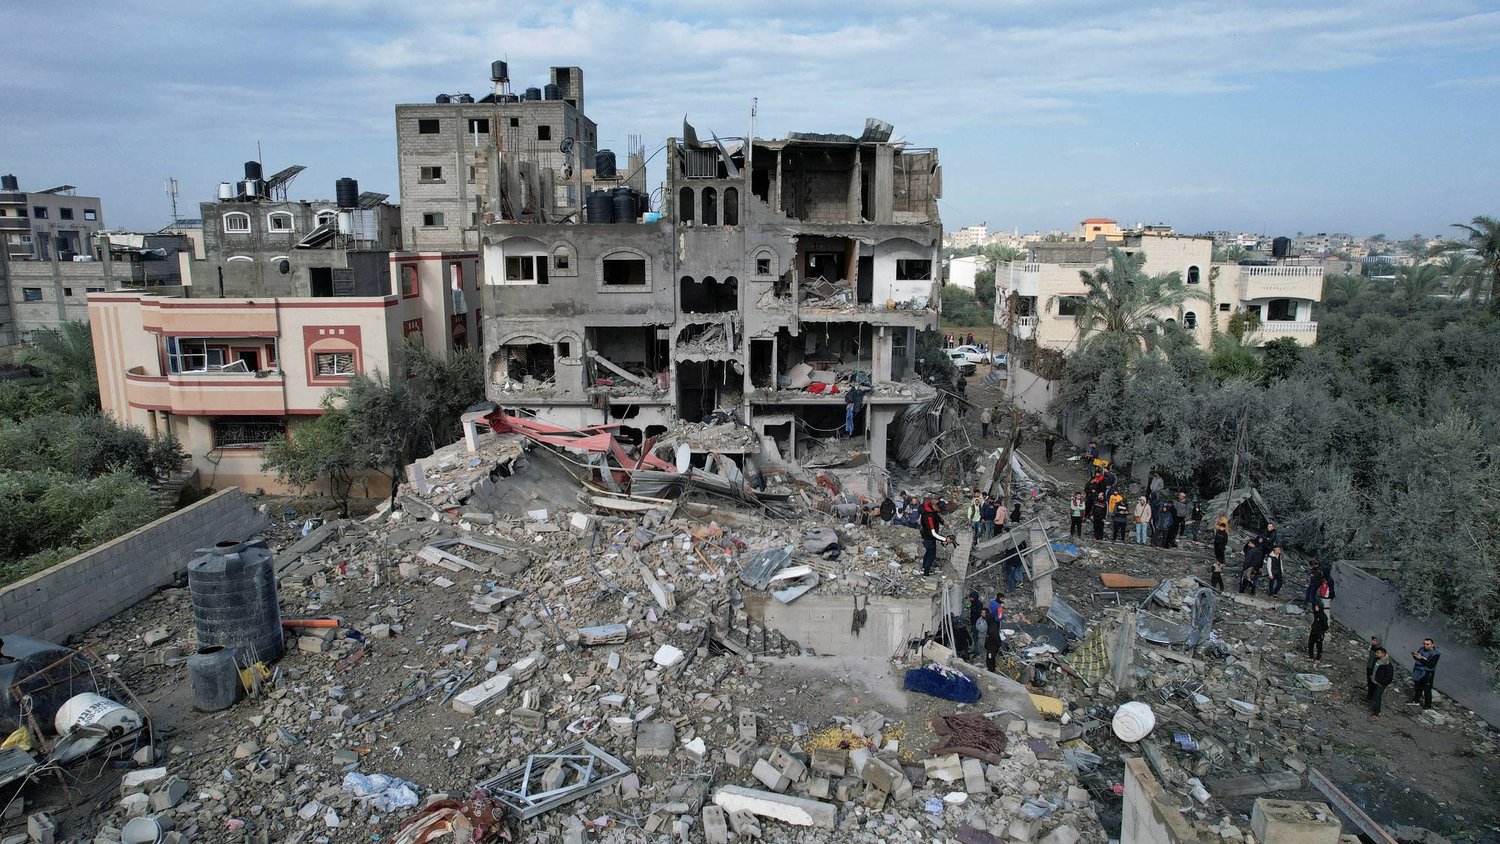  “هانديكاب إنترناشونال” تحذّر من مخاطر تهدد المدنيين في القطاع جراء مخلفات القصف